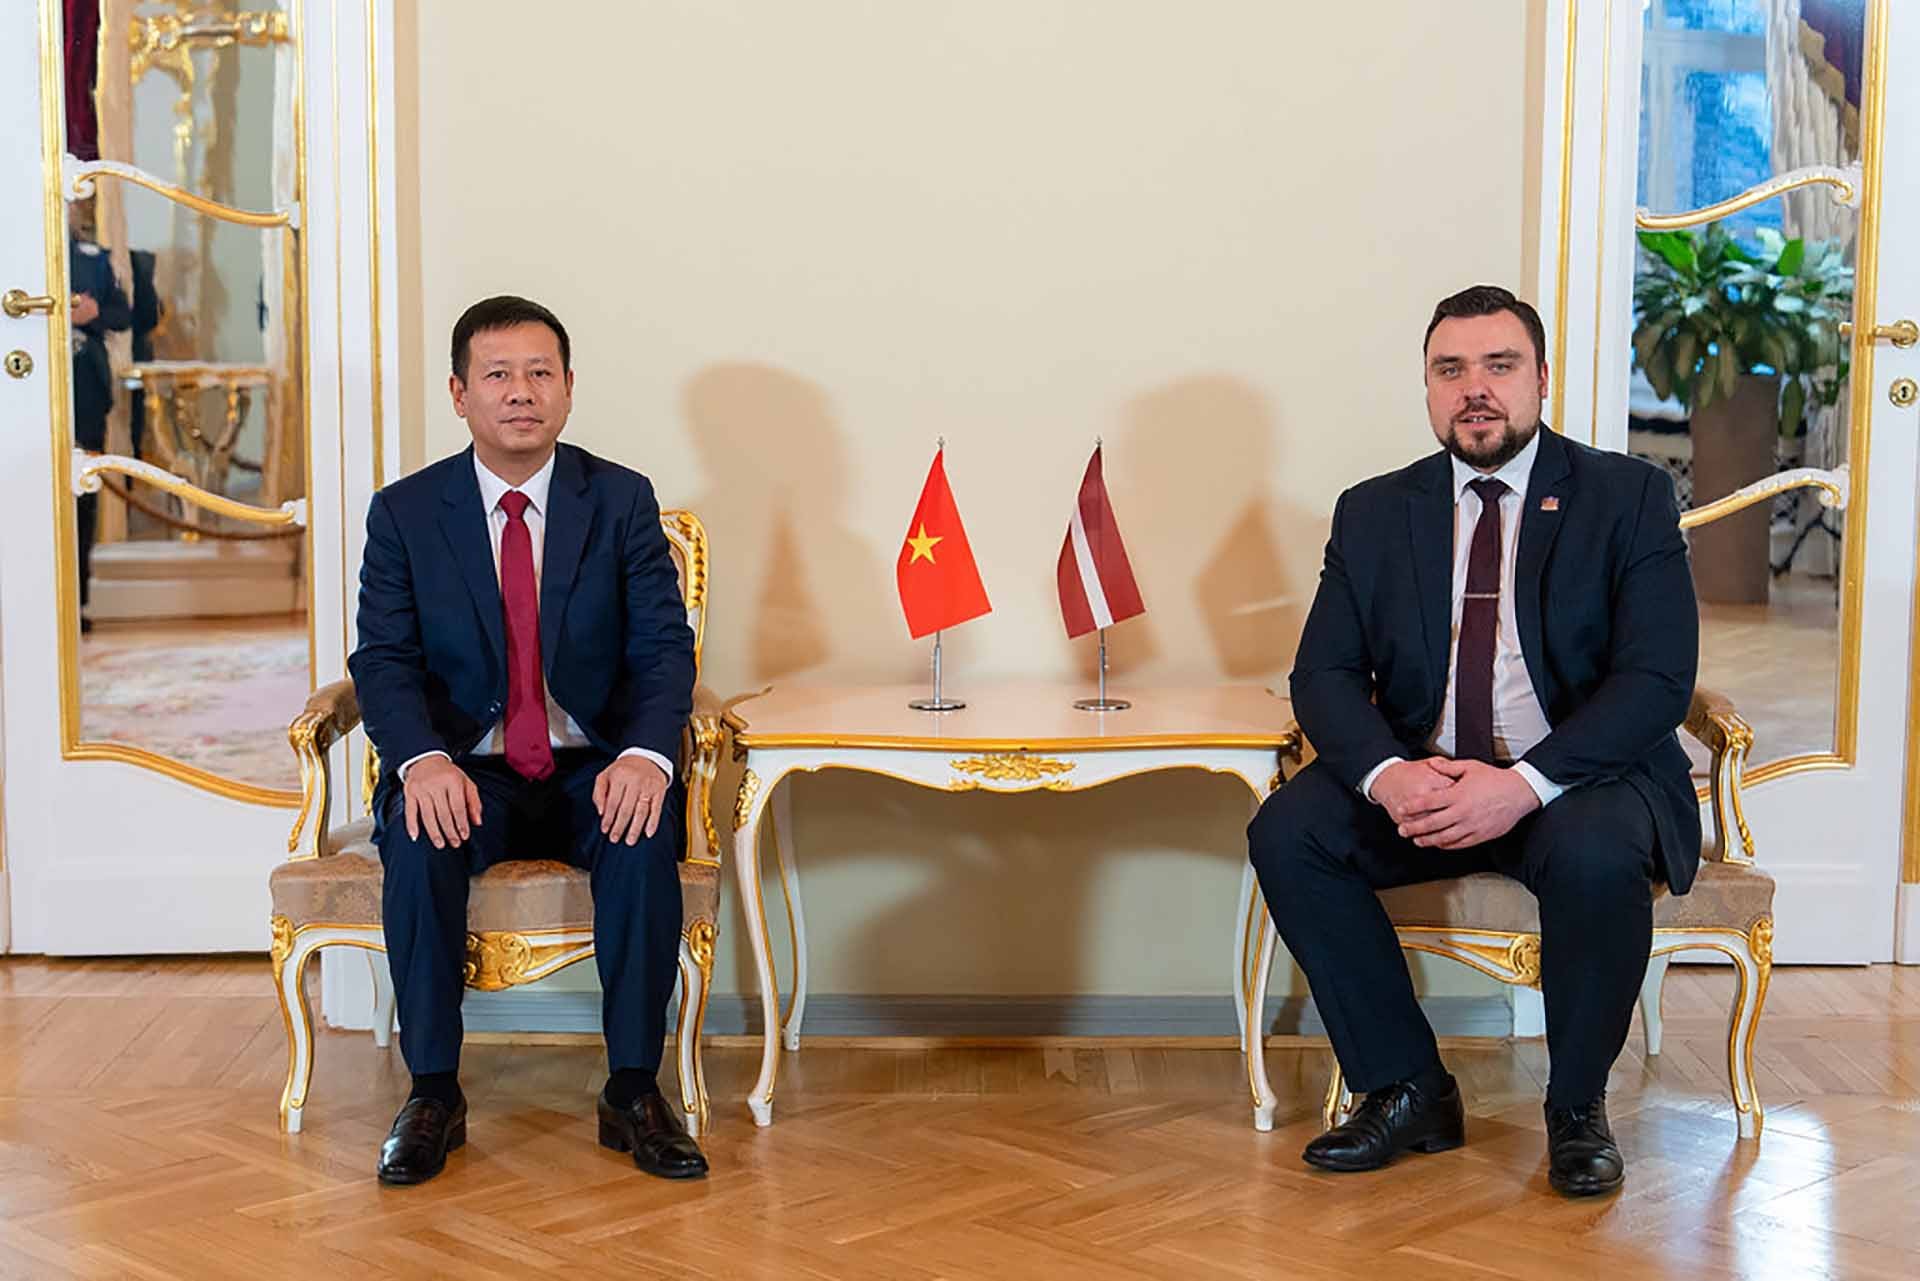 Đại sứ Trần Văn Tuấn trình Thư ủy nhiệm lên Tổng thống Latvia